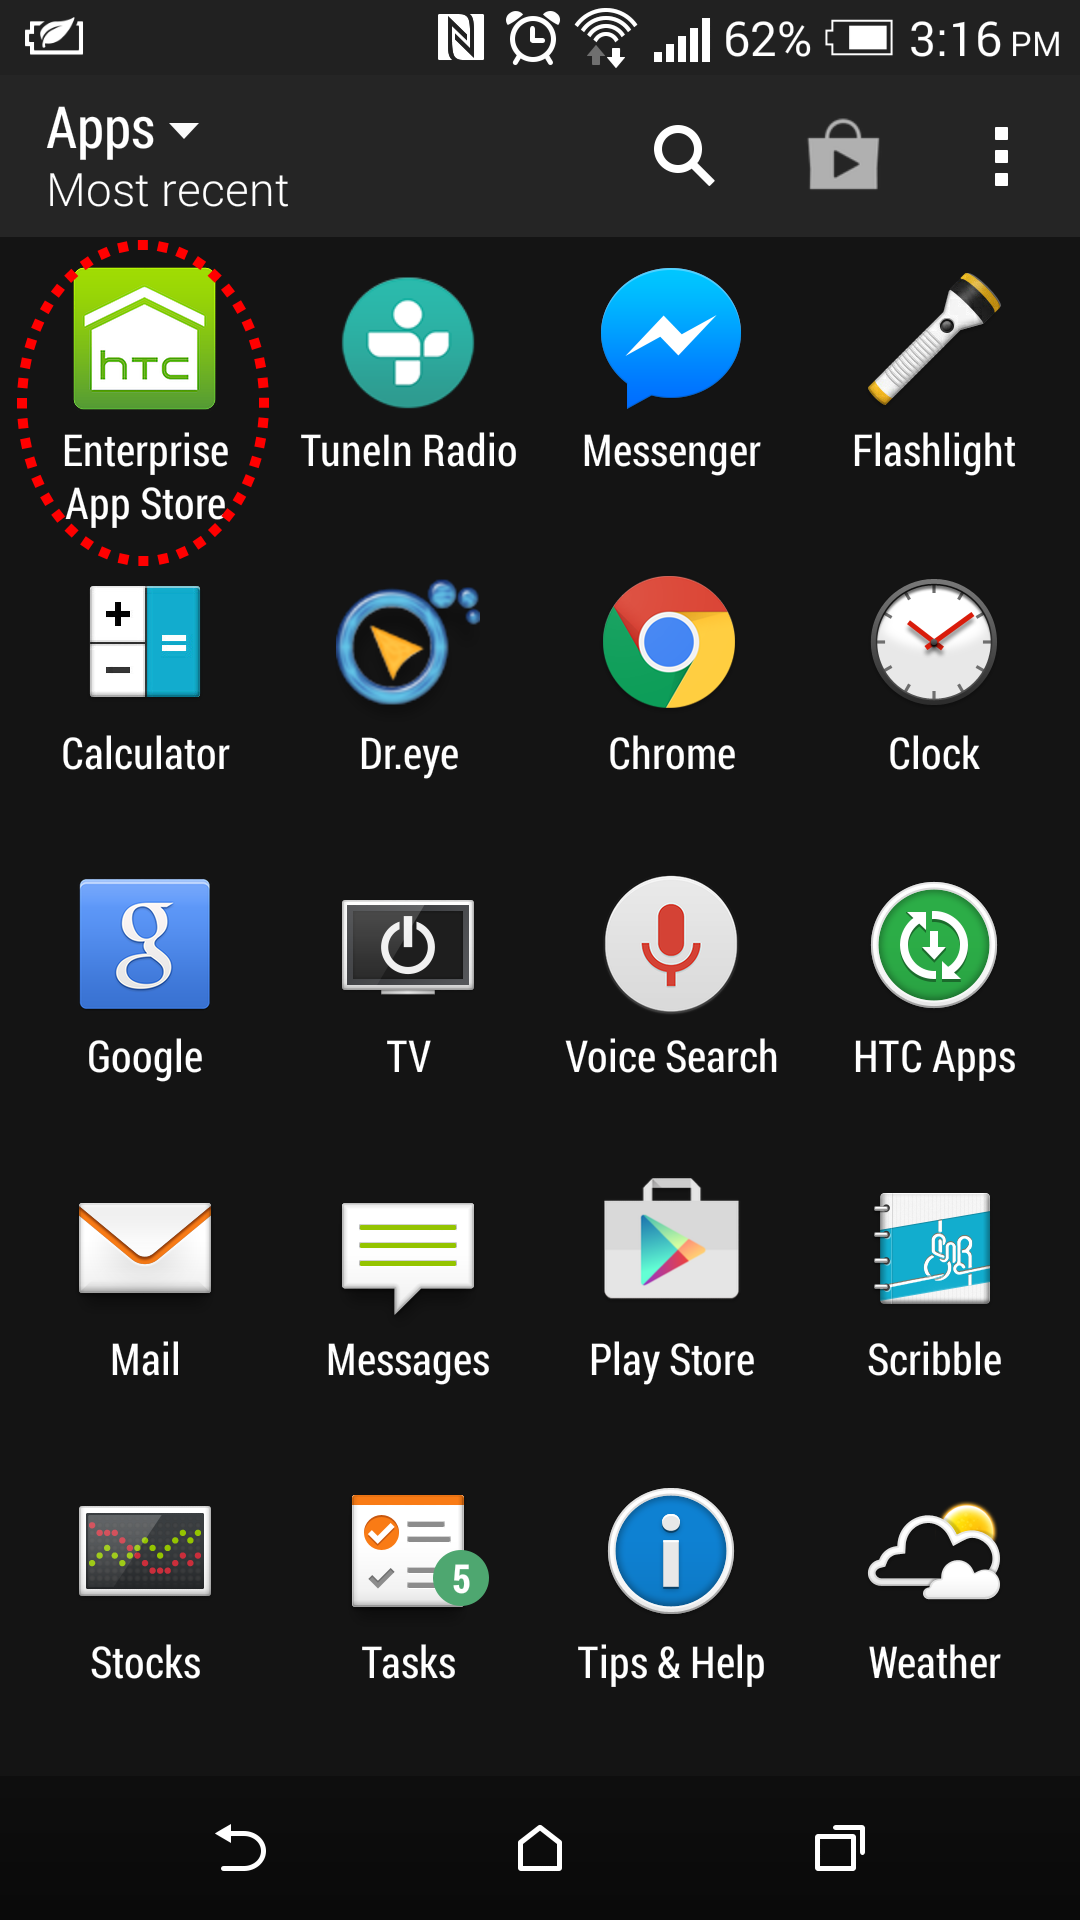 HTC Enterprise App Store